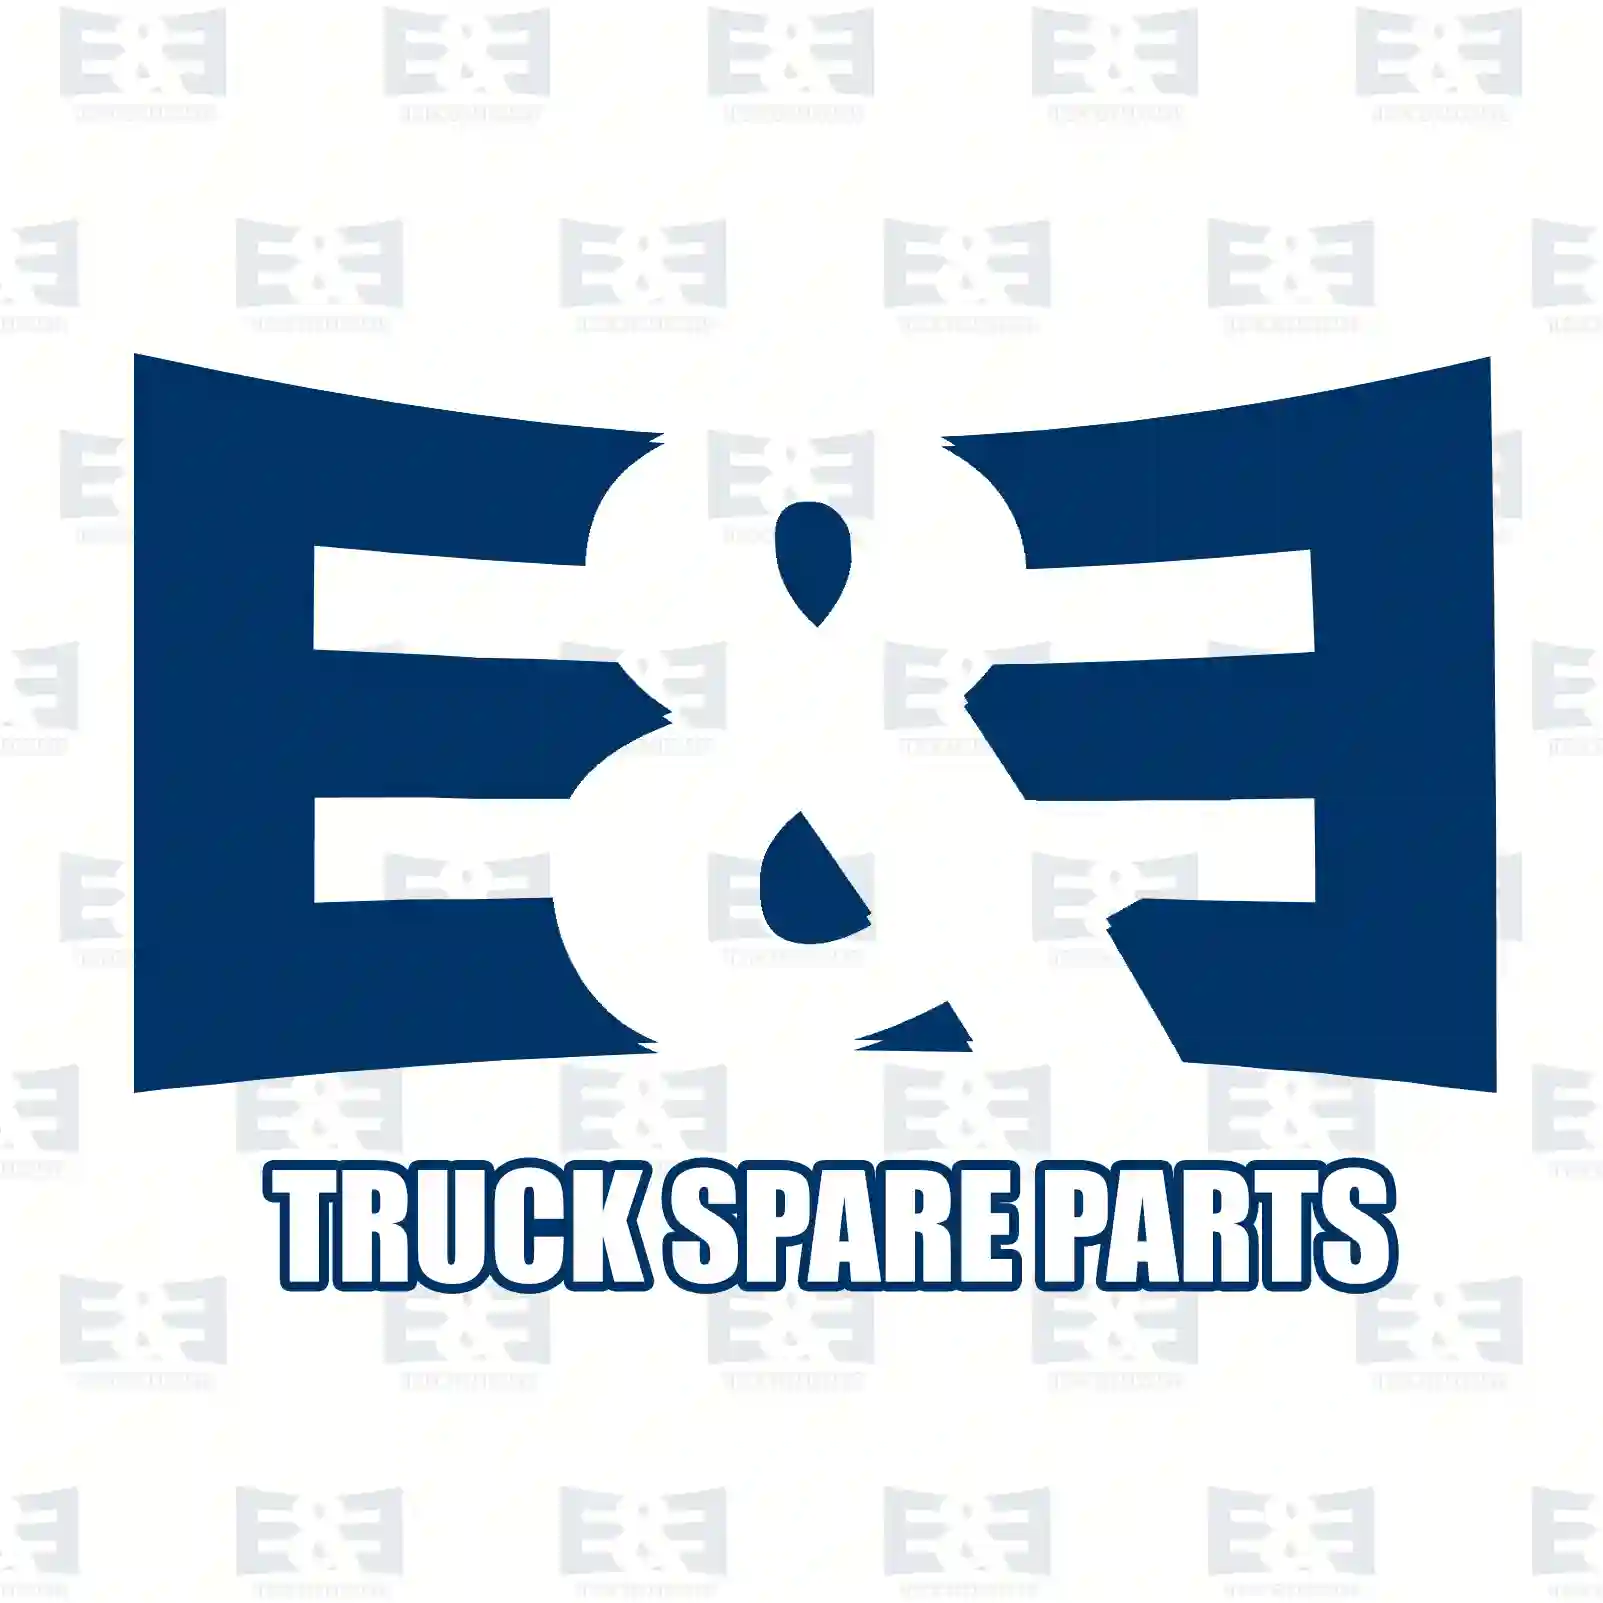 Diode group, 2E2297968, 503643755, 984383 ||  2E2297968 E&E Truck Spare Parts | Truck Spare Parts, Auotomotive Spare Parts Diode group, 2E2297968, 503643755, 984383 ||  2E2297968 E&E Truck Spare Parts | Truck Spare Parts, Auotomotive Spare Parts